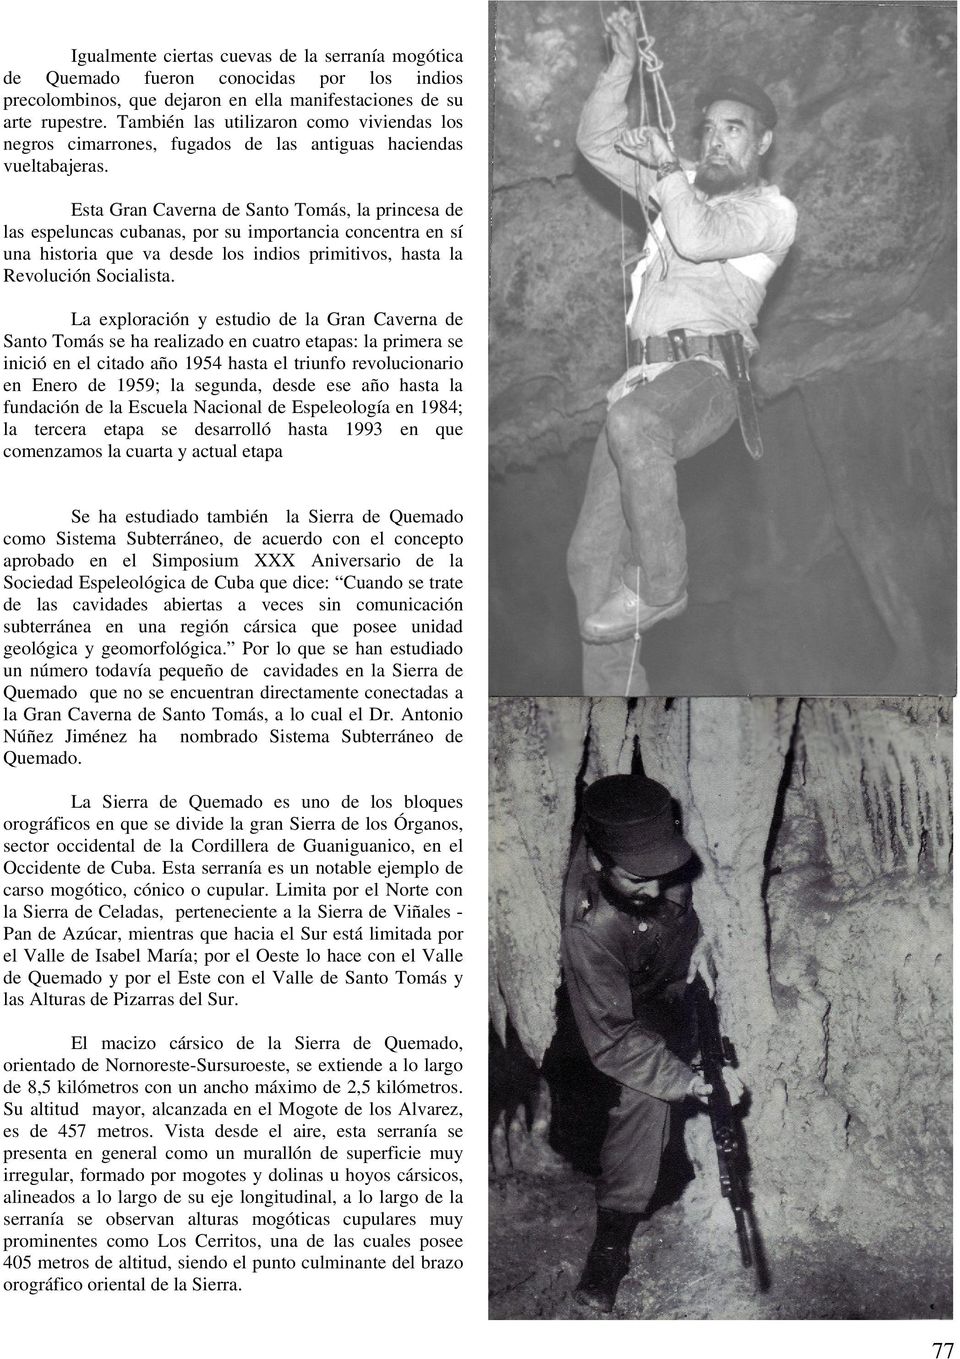 Esta Gran Caverna de Santo Tomás, la princesa de las espeluncas cubanas, por su importancia concentra en sí una historia que va desde los indios primitivos, hasta la Revolución Socialista.